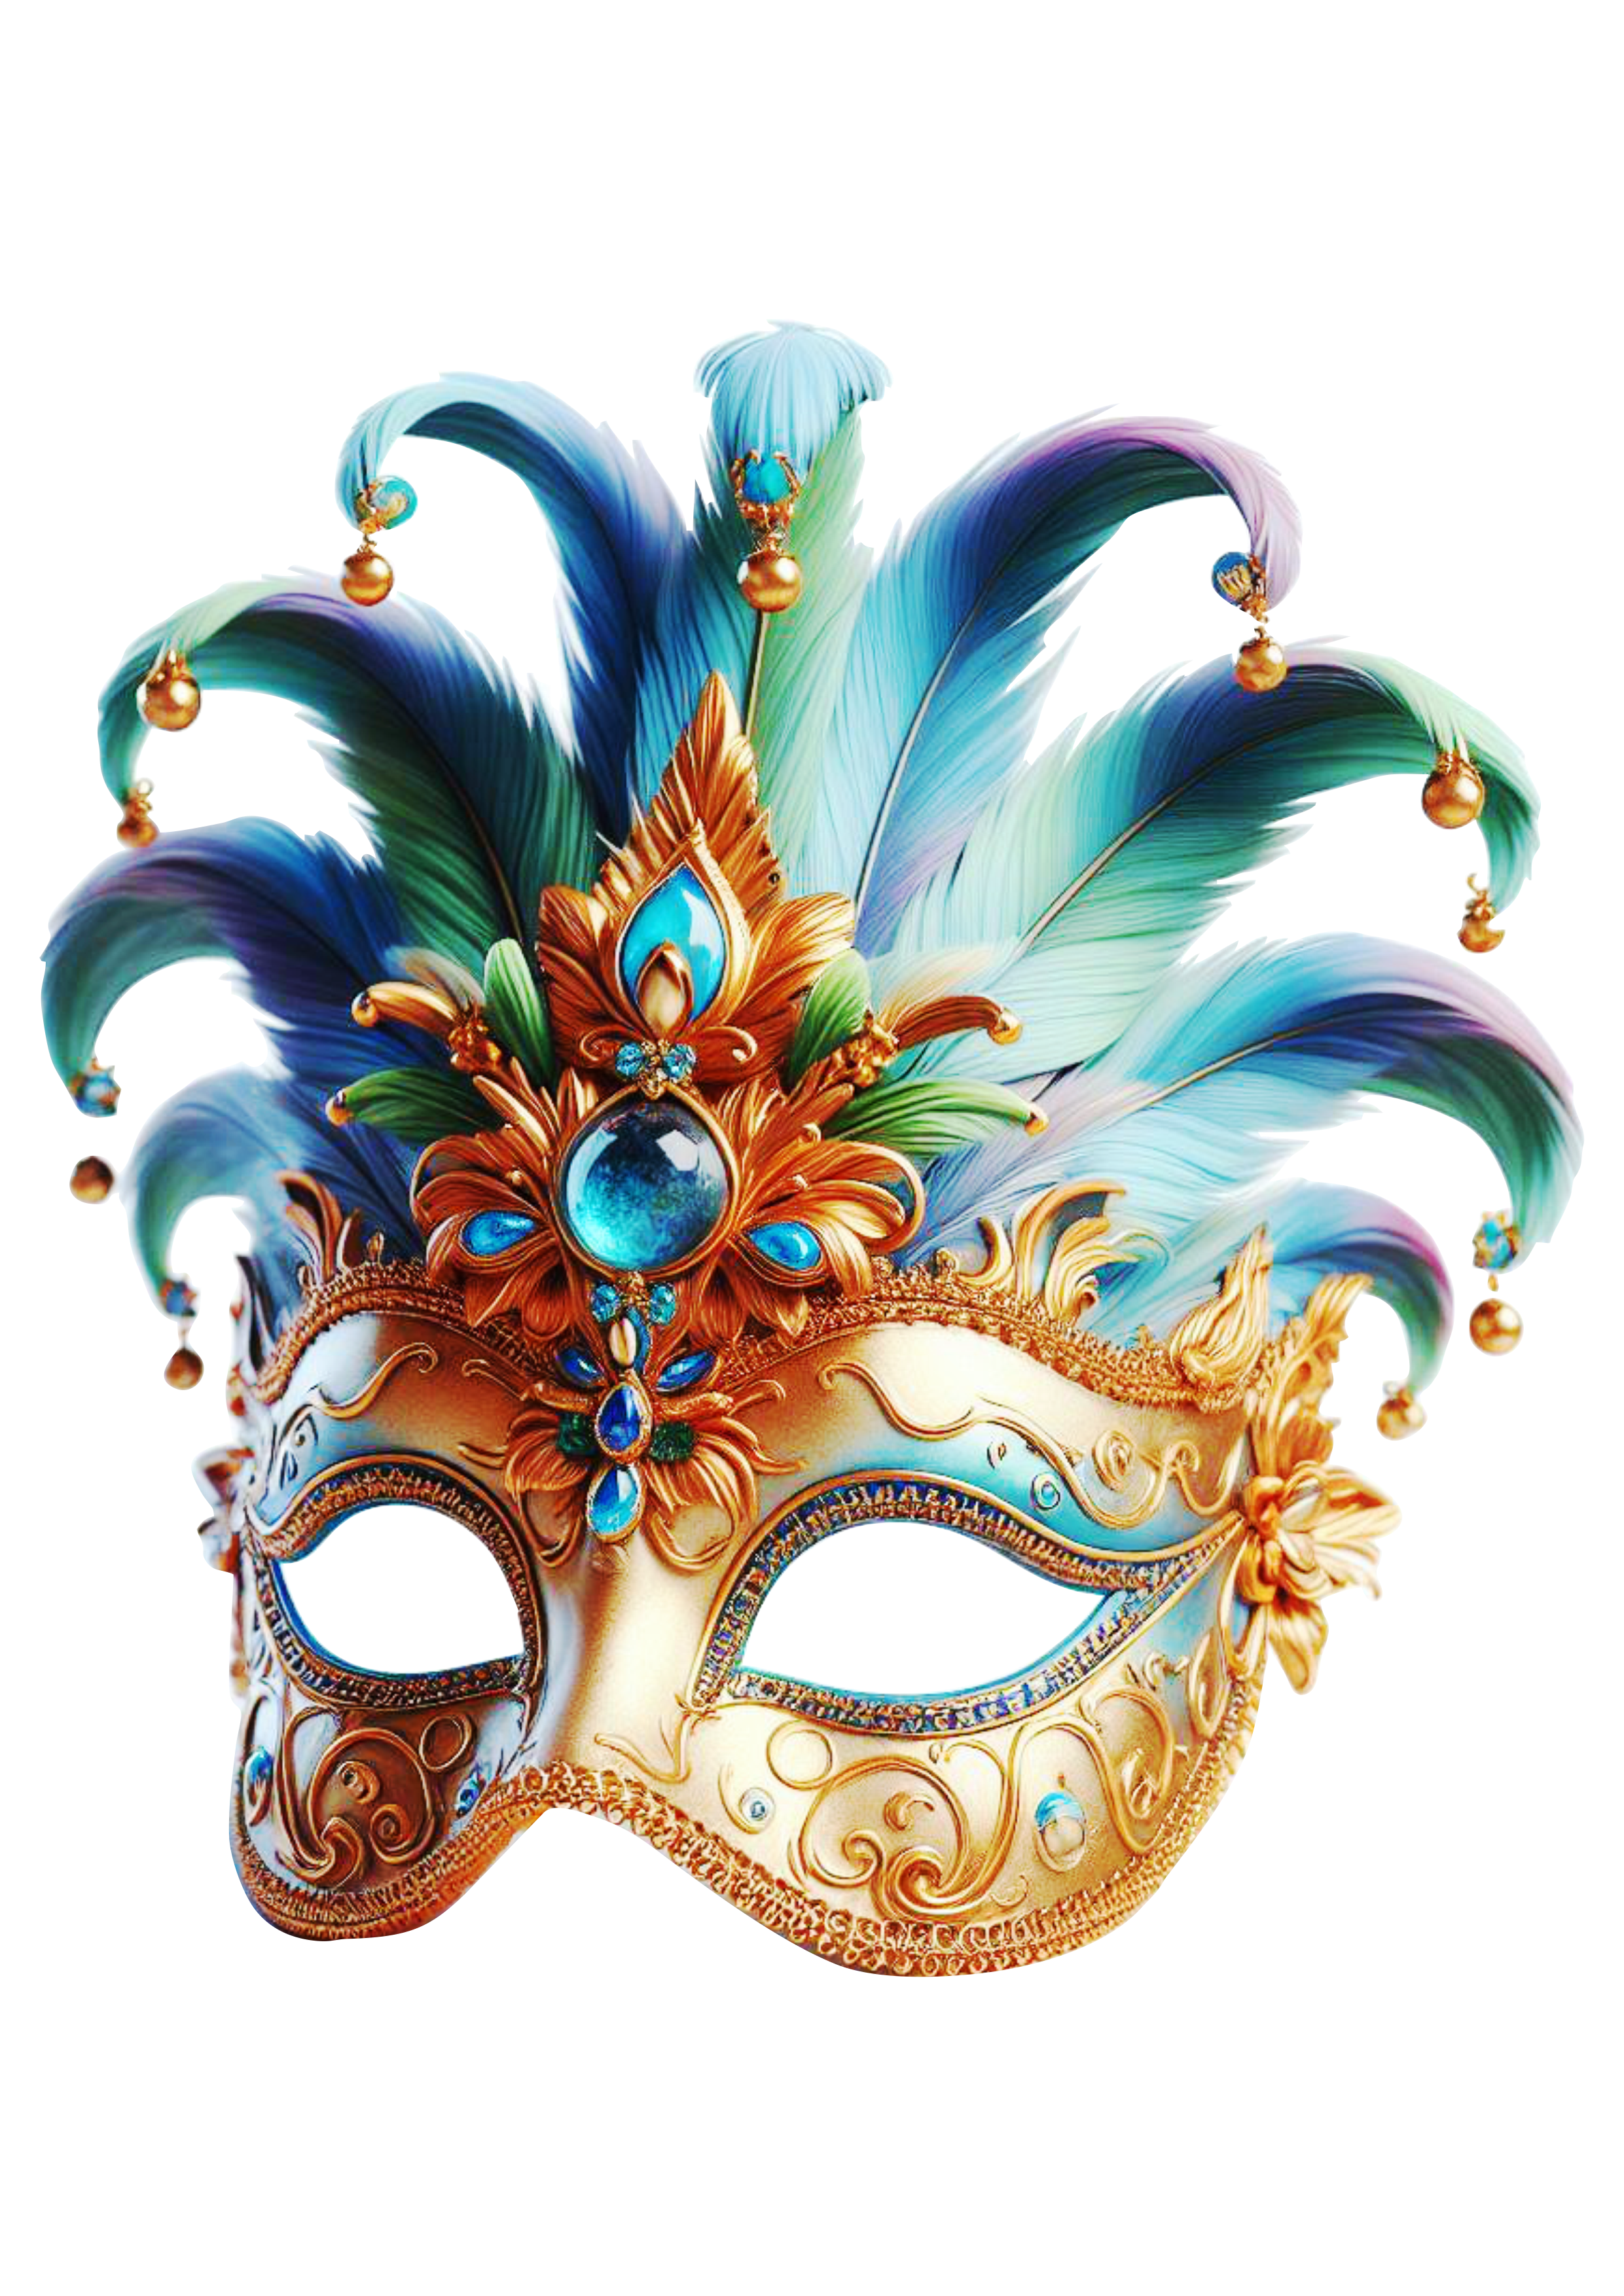 Máscara de carnaval brilhante joias baile de máscaras png image dourado